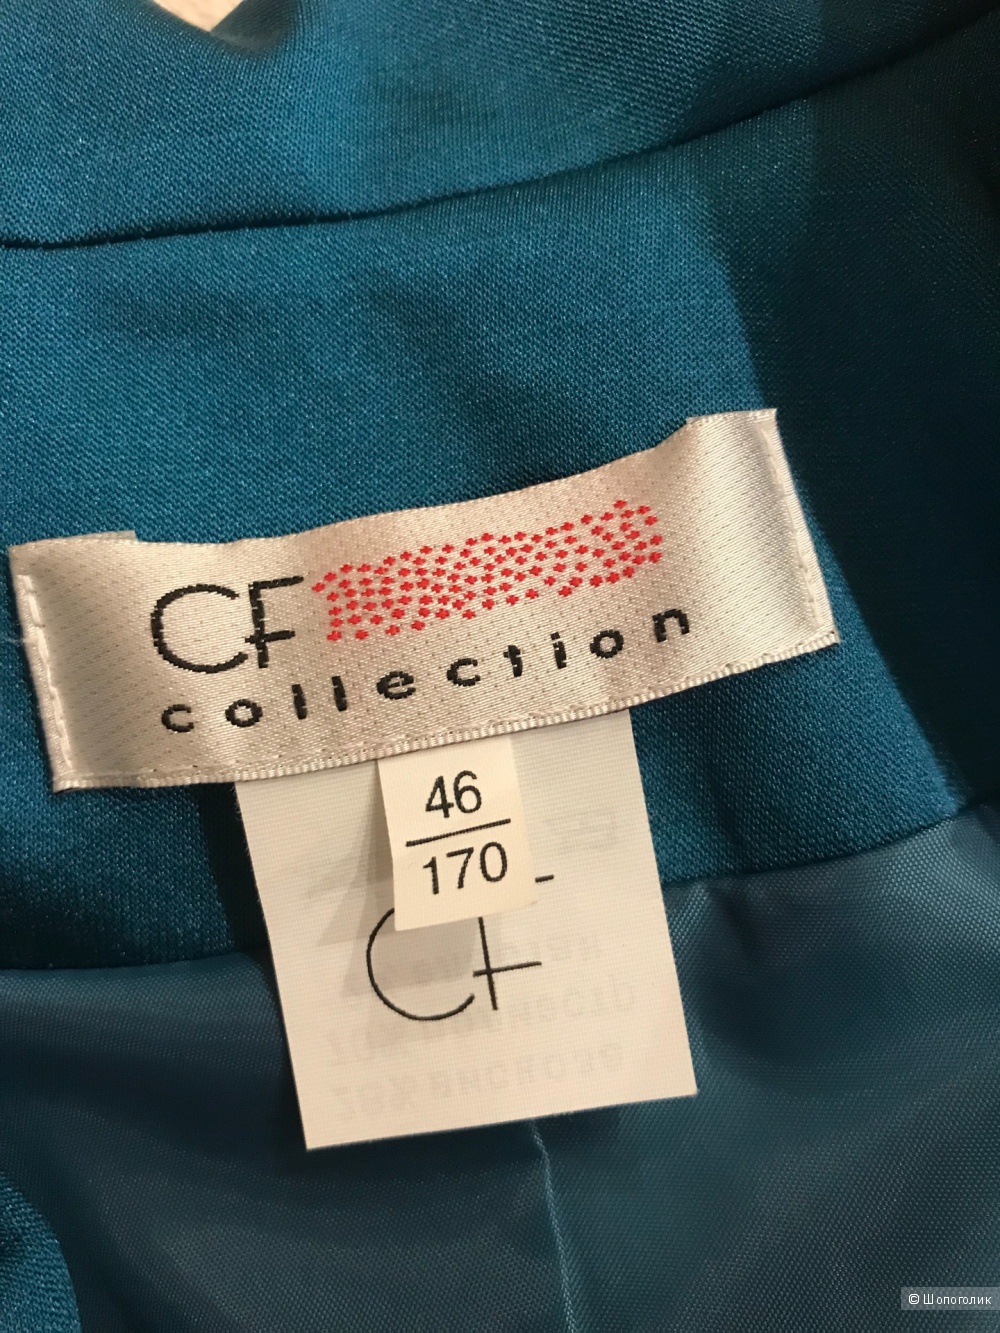 Пиджак GF collection размер 46, рост 170